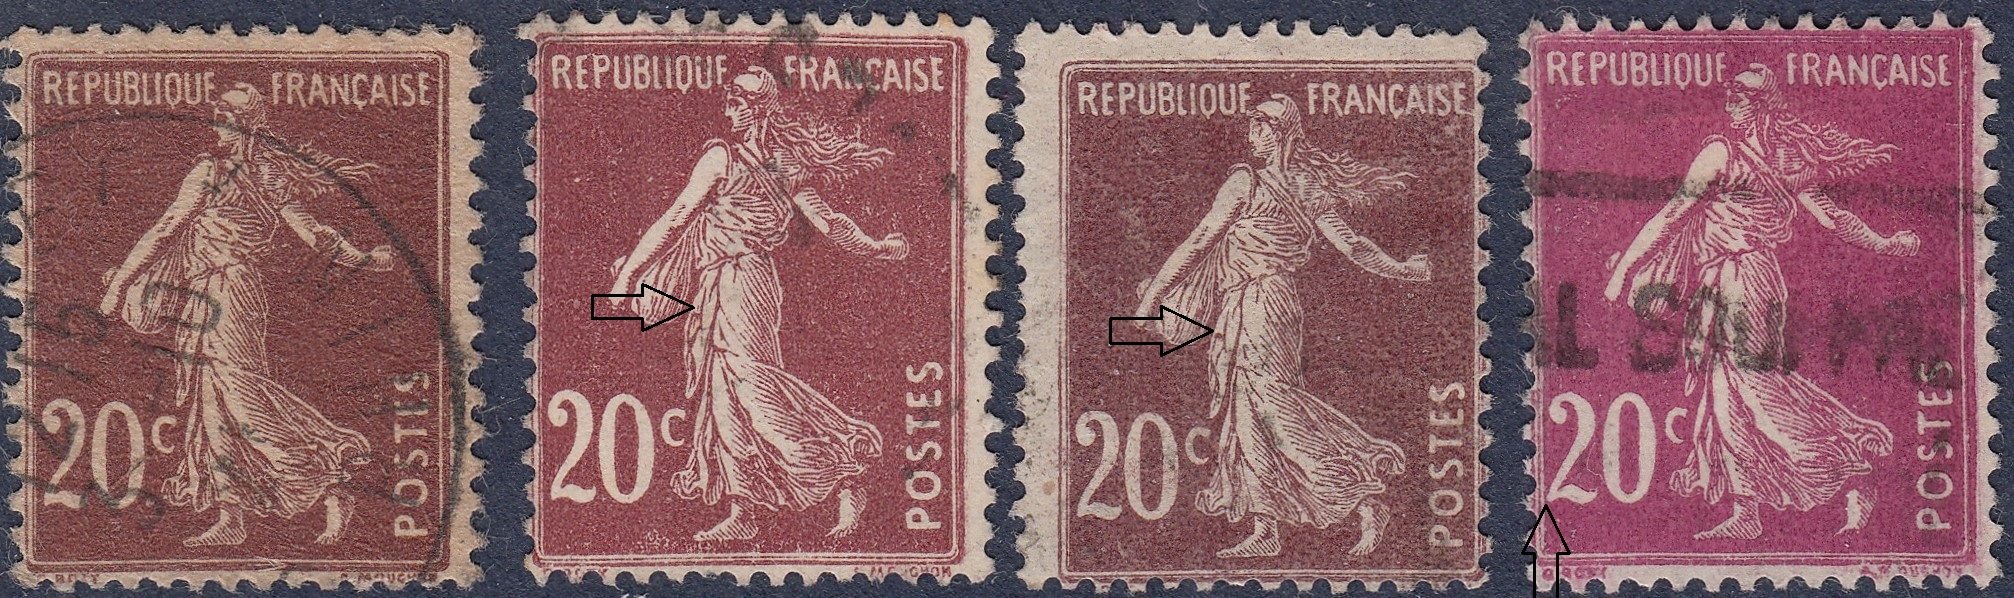 00111 Type Blanc 5c vert type II de 1900 - Stamps - Europe - France